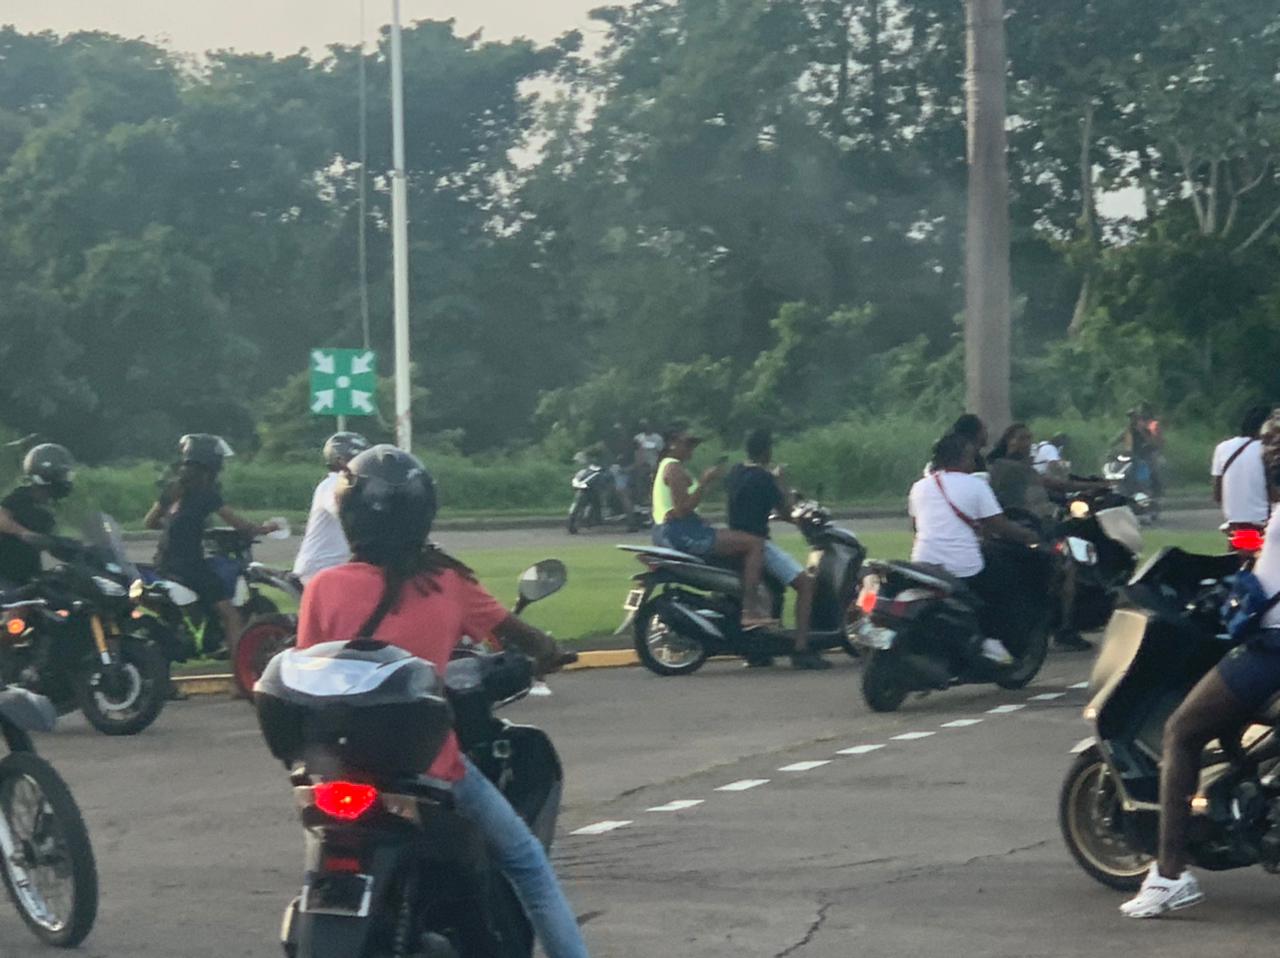     Les gendarmes ont interpellé l'un des instigateurs du rodéo de moto survenu près du centre pénitentiaire

